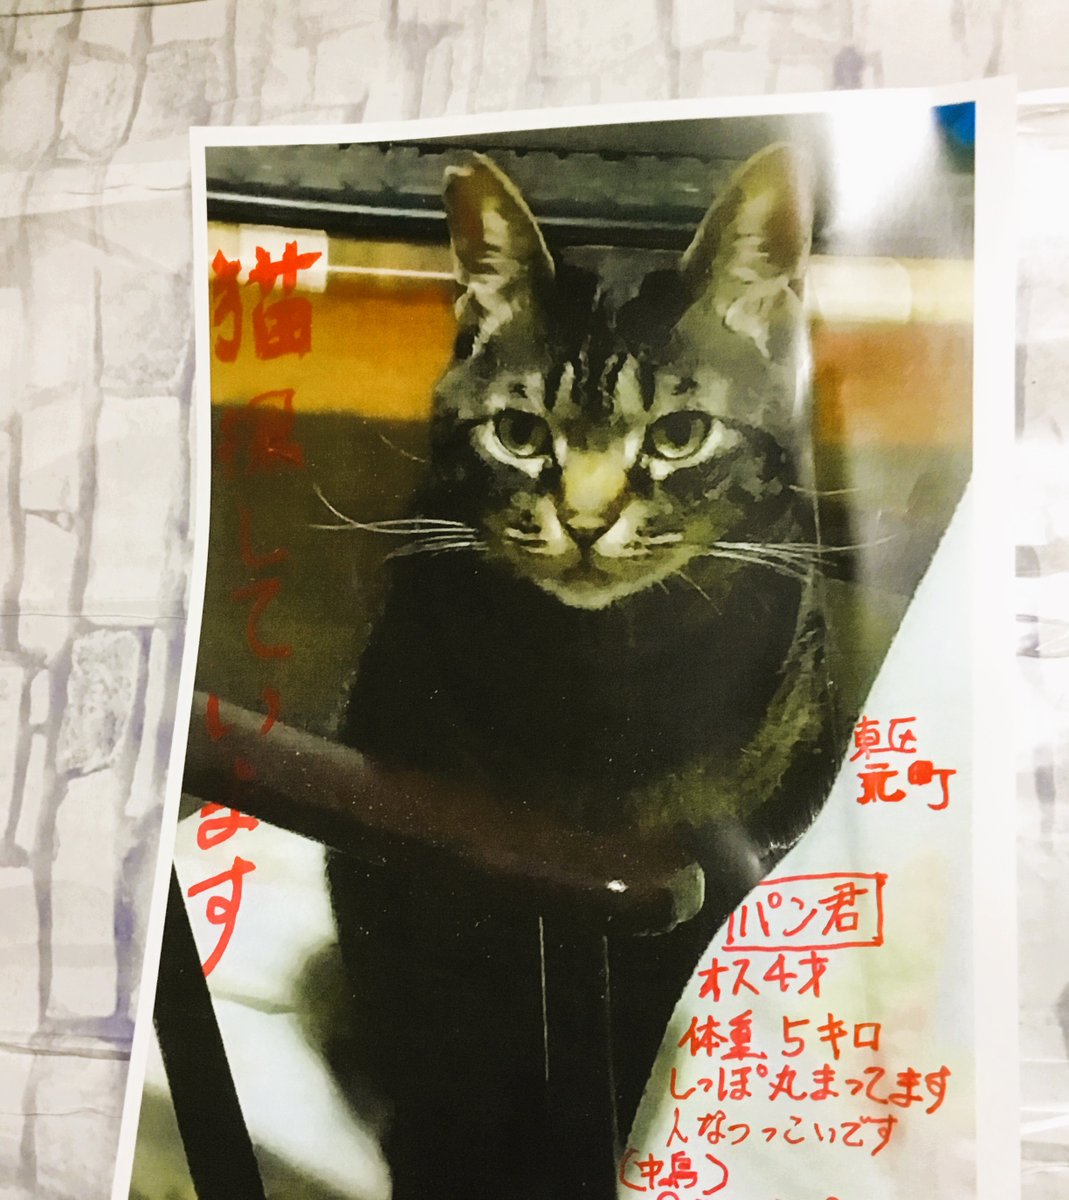 #拡散希望
猫を探しています。
捜索中、ポスティング、近くのお店にポスター。
さらに、 InstagramとFacebookに地域限定の広告。
現在4歳、生後9カ月のとき山奥に捨てられていた保護猫。キジトラ猫、人懐っこい。
ご協力お願いいたします 。
#迷い猫 #迷子猫 #札幌市　東区元町